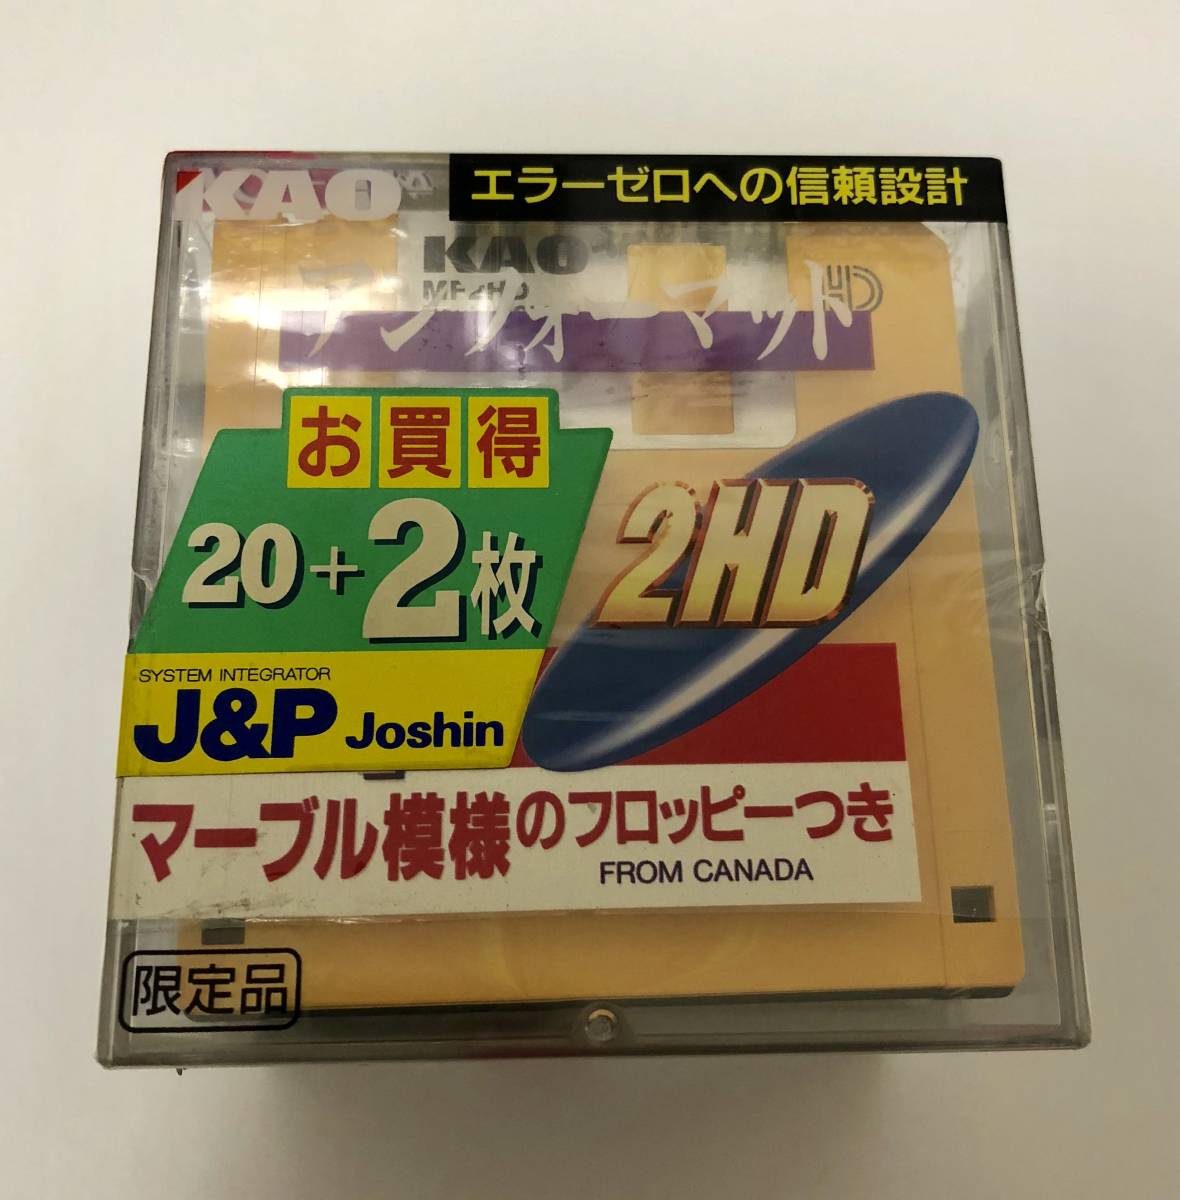 未使用品 KAO 花王 3.5インチ 2HD フロッピーディスク 限定品 マーブル模様フロッピー付 22枚セット 日本製